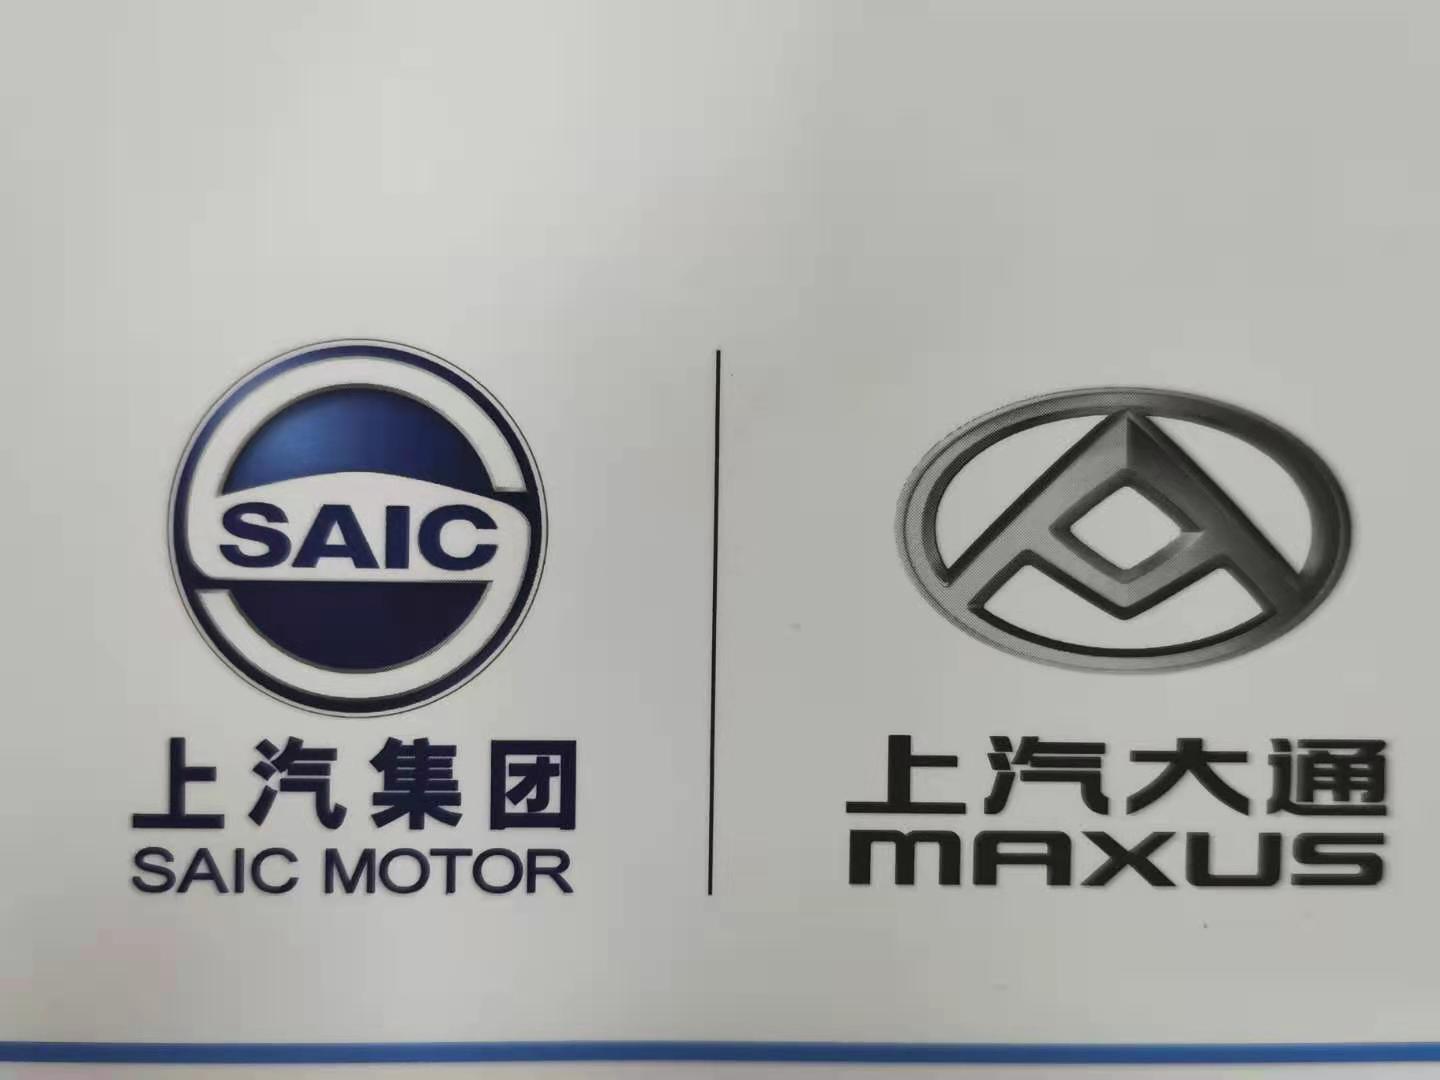 深圳市新一代汽车销售服务有限公司